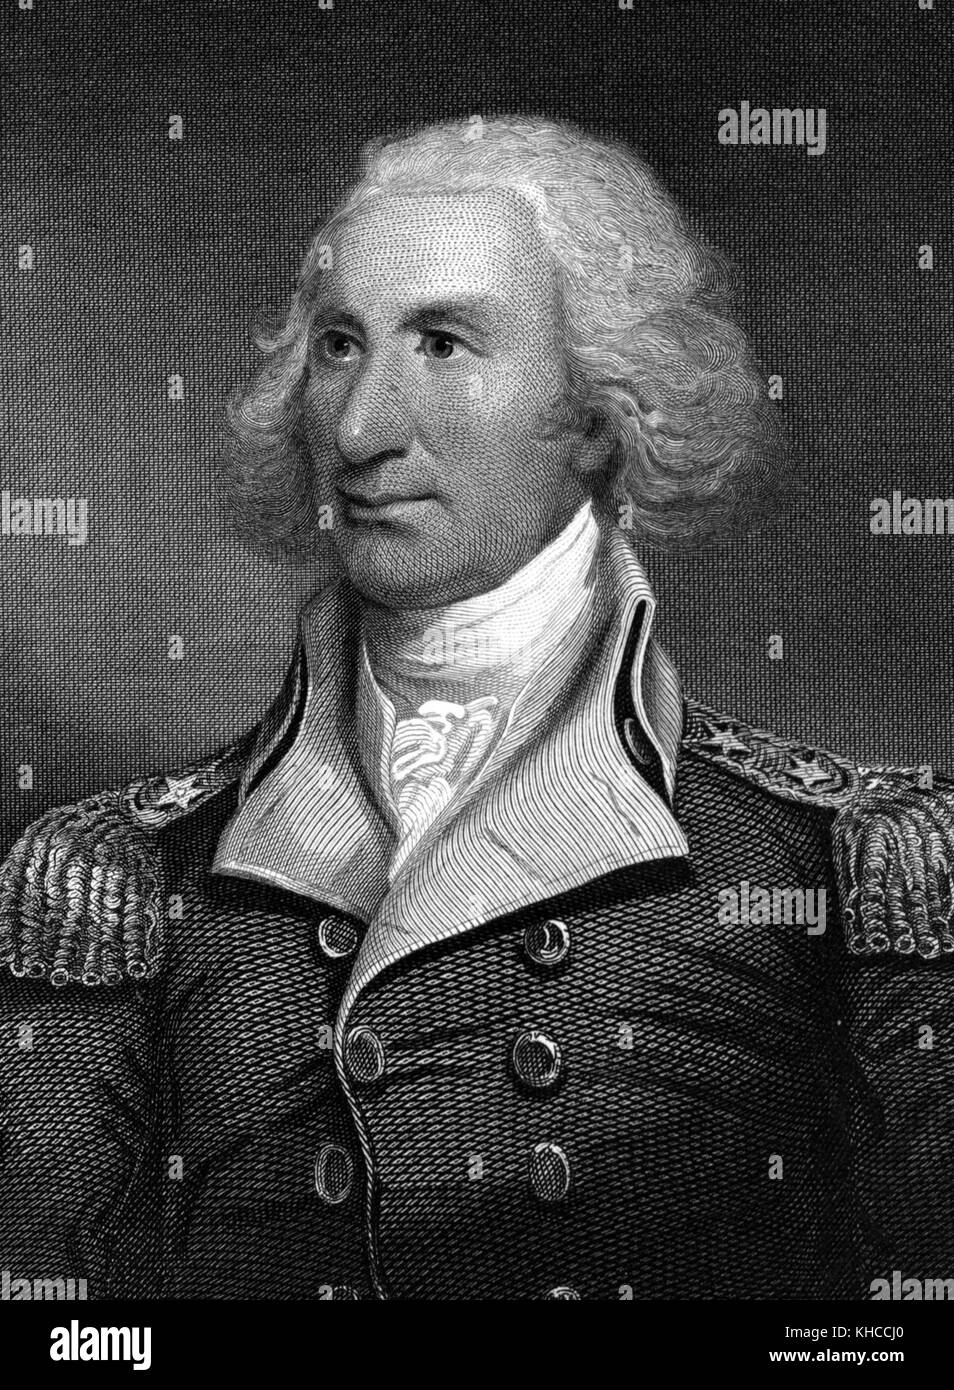 Ritratto inciso del maggiore generale Philip Schuyler, una generale durante la rivoluzione americana e un senato degli Stati Uniti da New York, 1826. dalla biblioteca pubblica di new york. Foto Stock